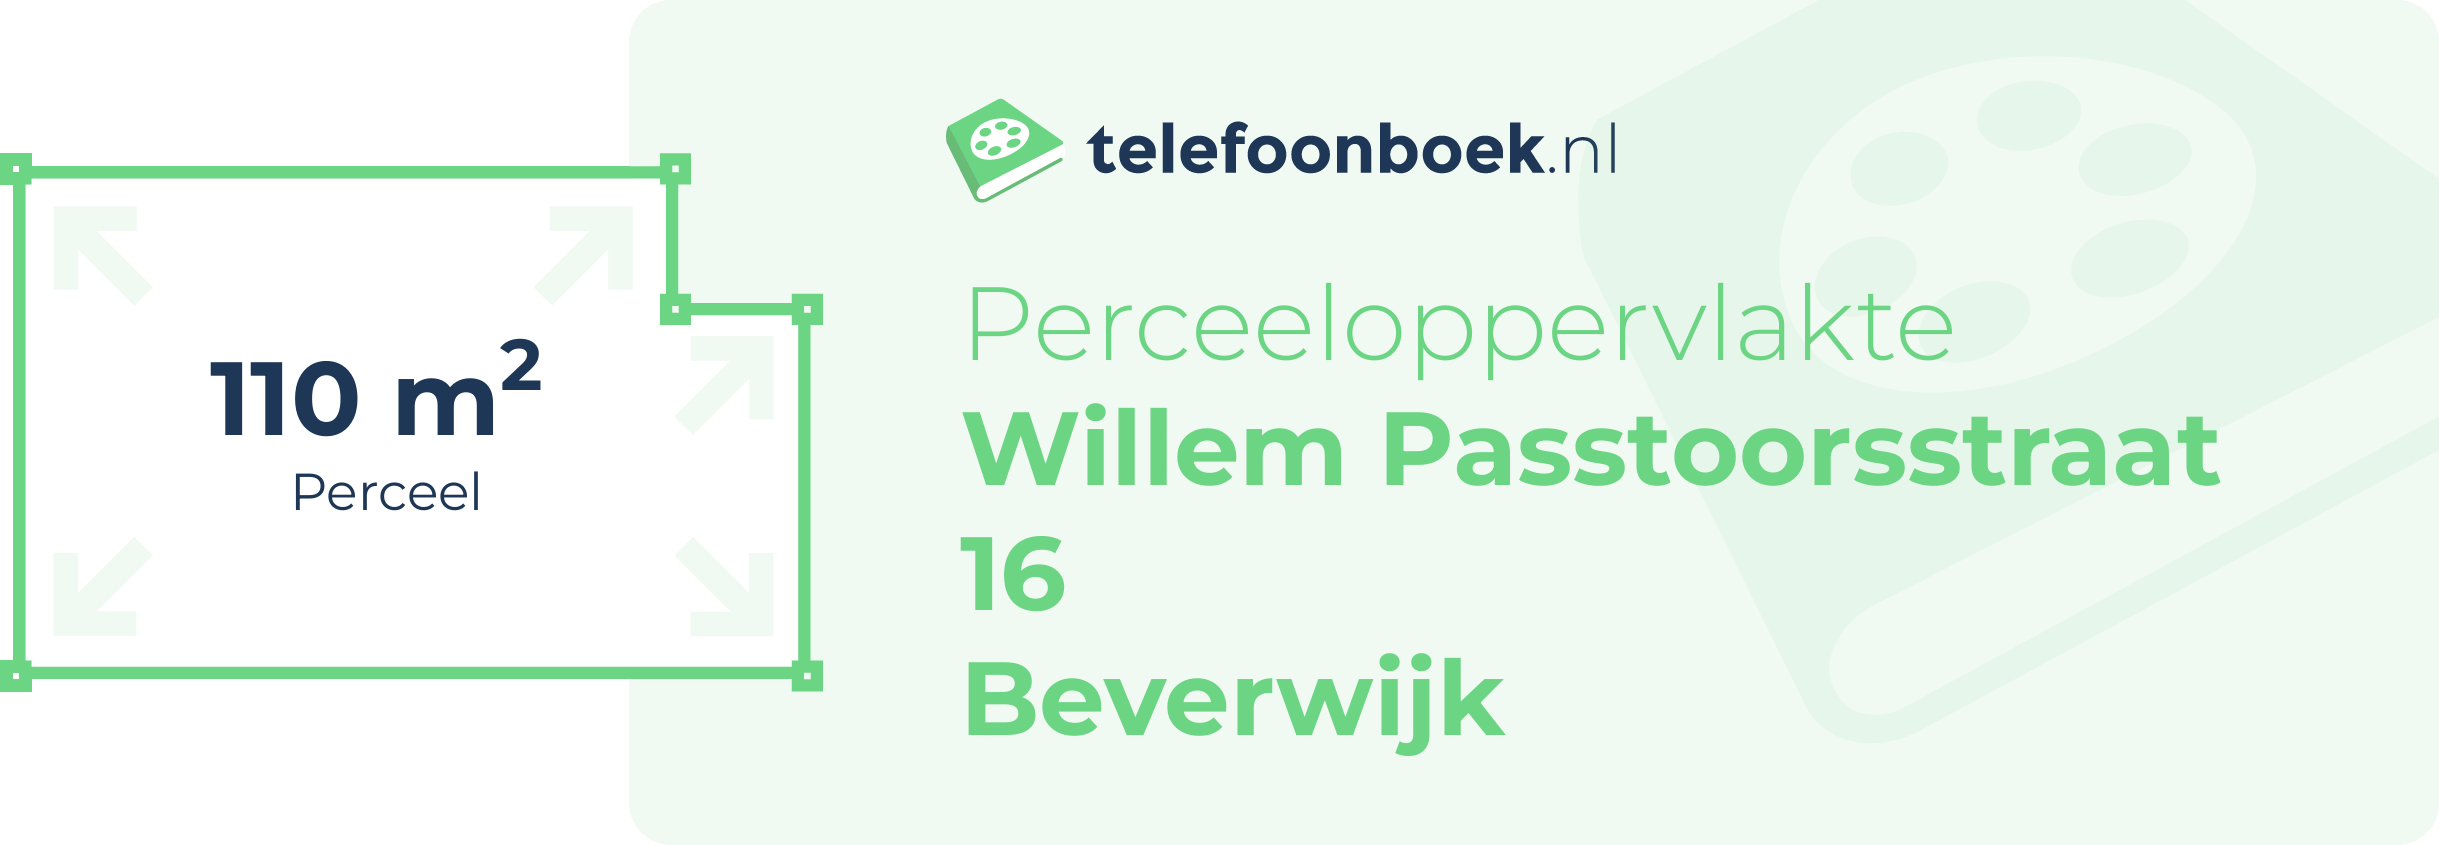 Perceeloppervlakte Willem Passtoorsstraat 16 Beverwijk